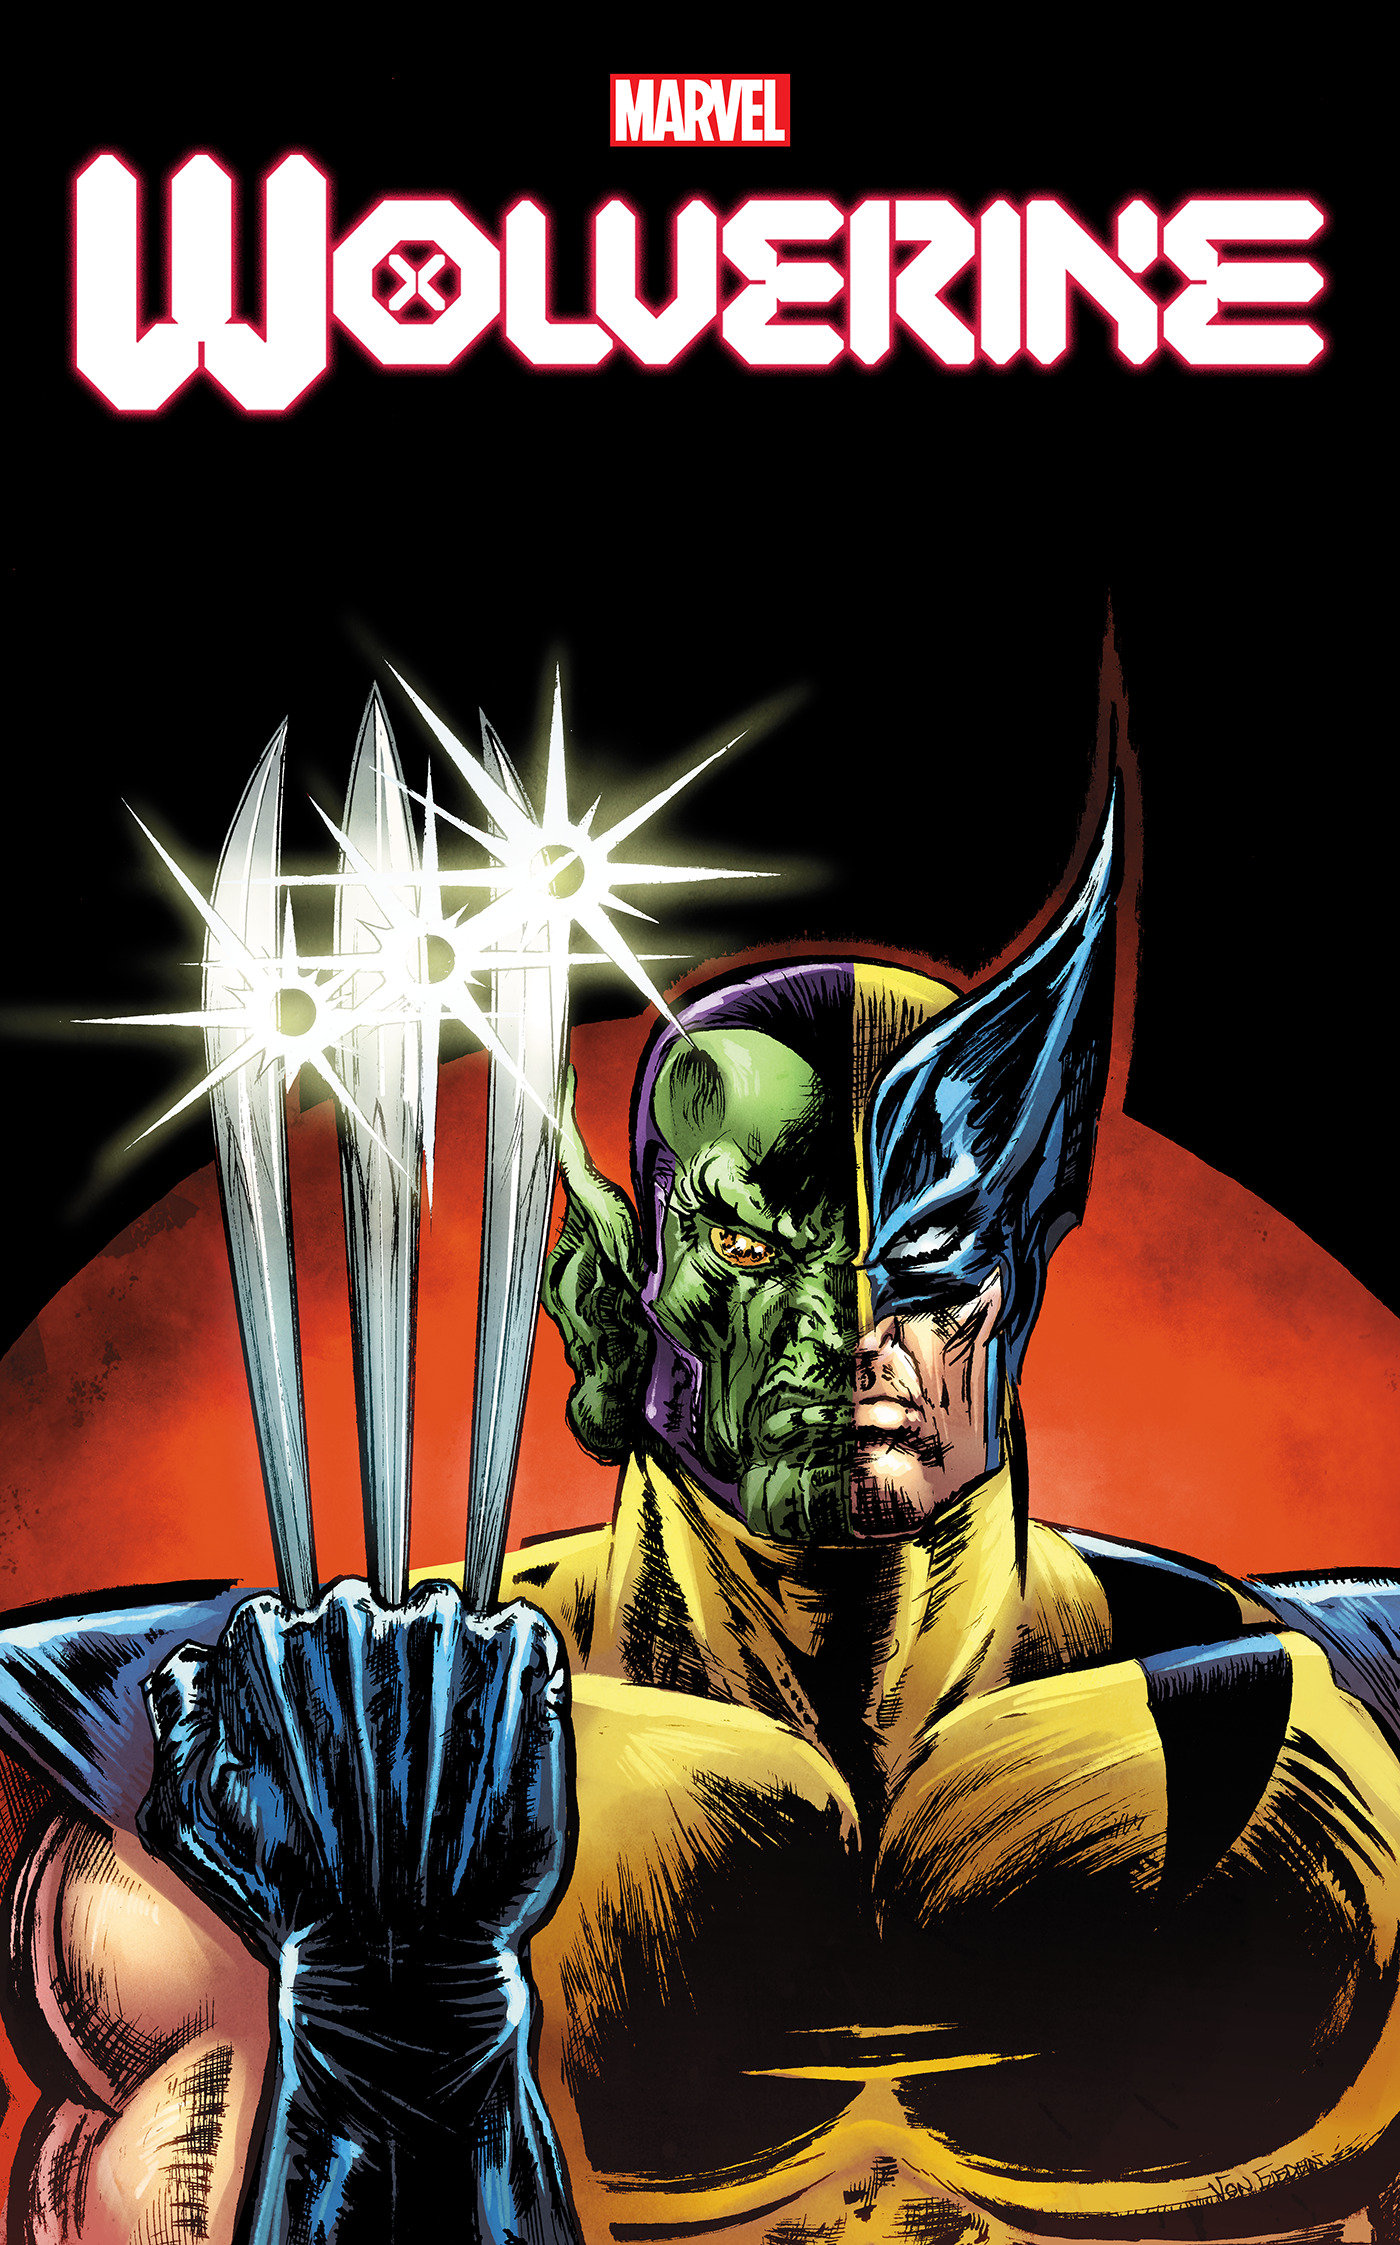 Wolverine #21 Skrull Variant (2020)